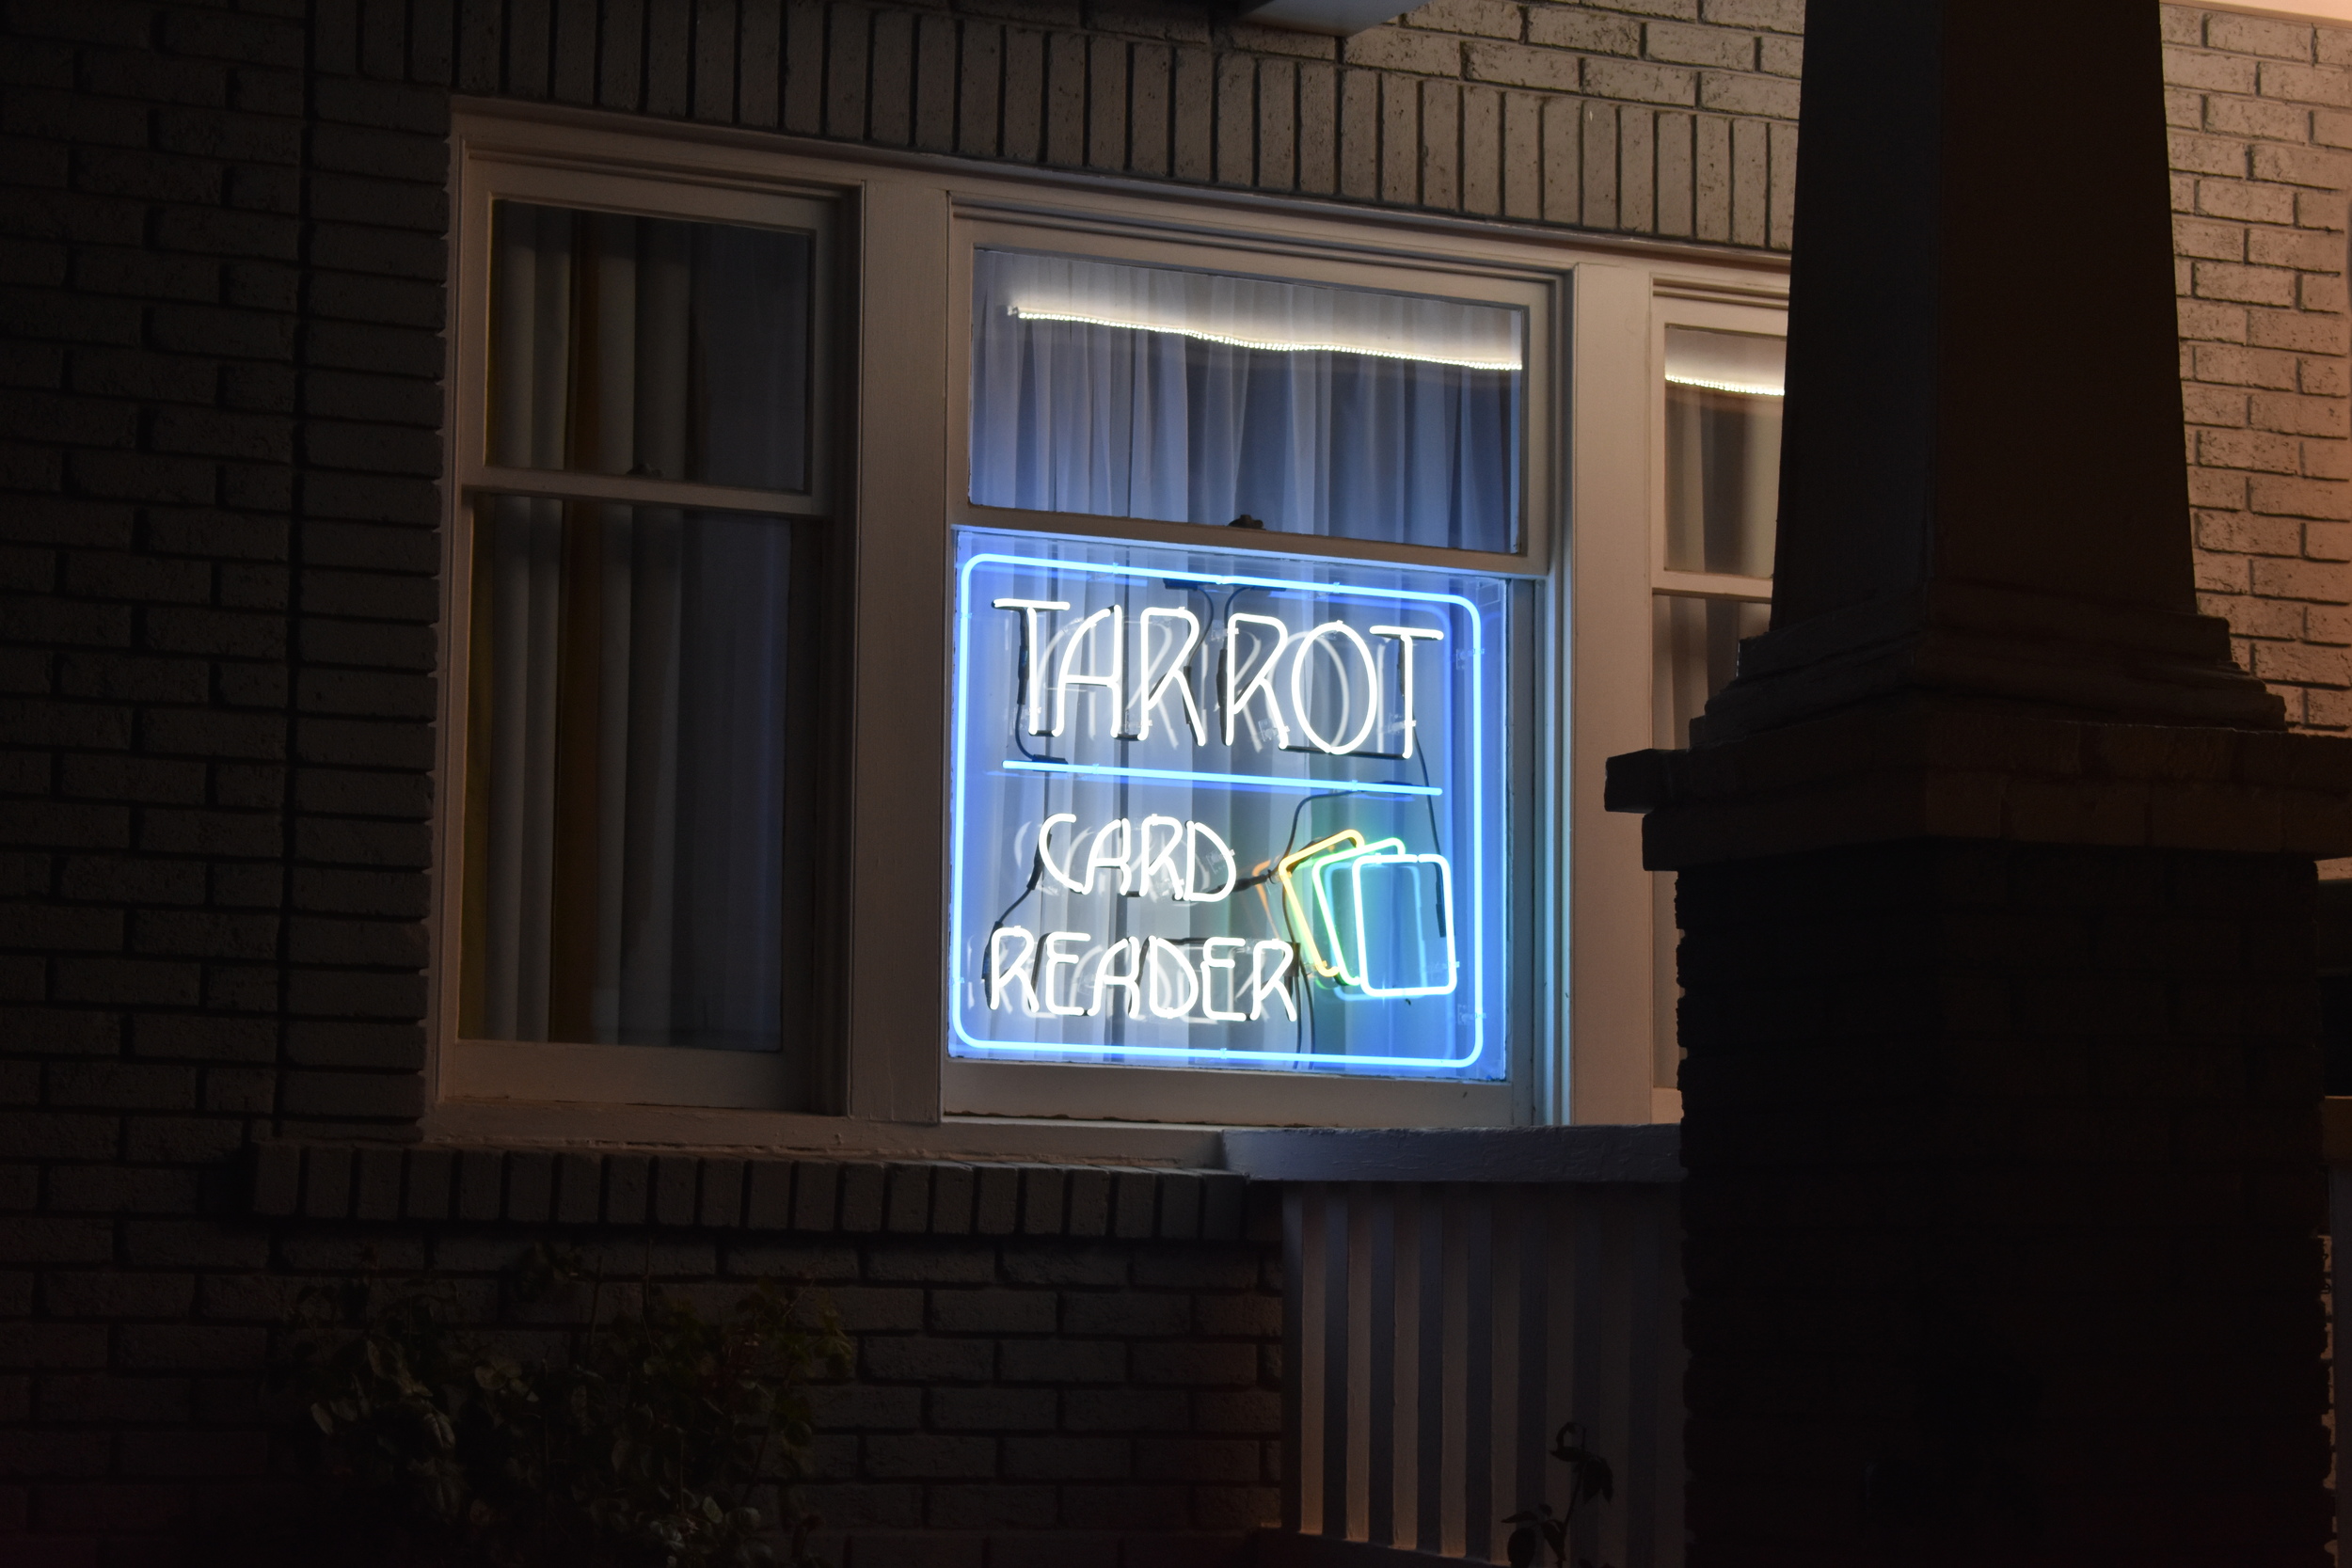 Tarot reading window sign, Reno, Nevada